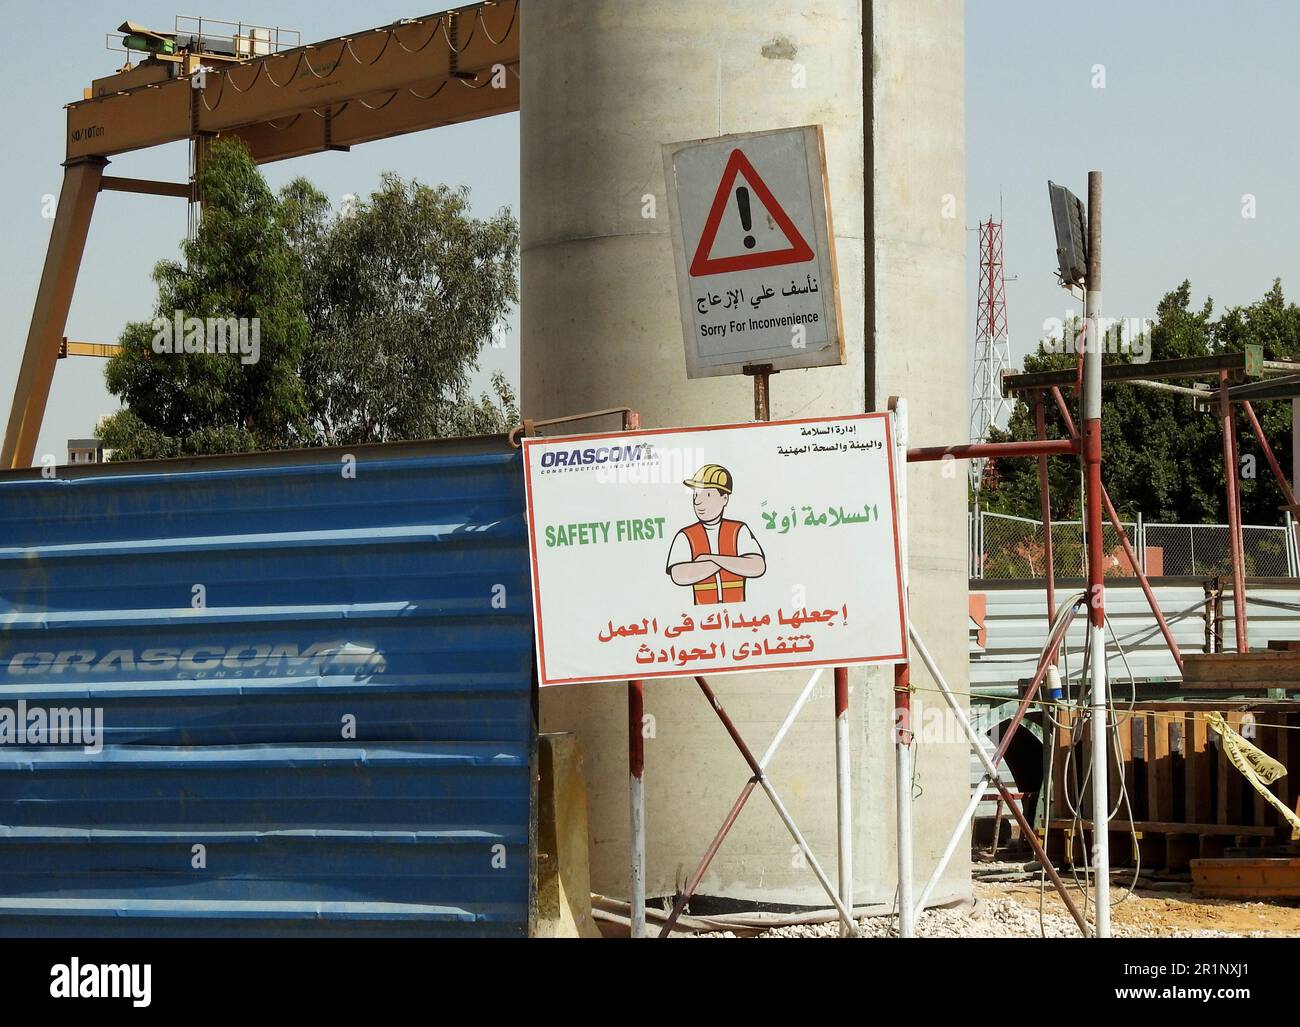 Kairo, Ägypten, Mai 10 2023: Eine Baustelle für Orascom Construction Industries Company mit einem Warnzeichen für Sicherheit zuerst aus Arbeitssicherheit Stockfoto